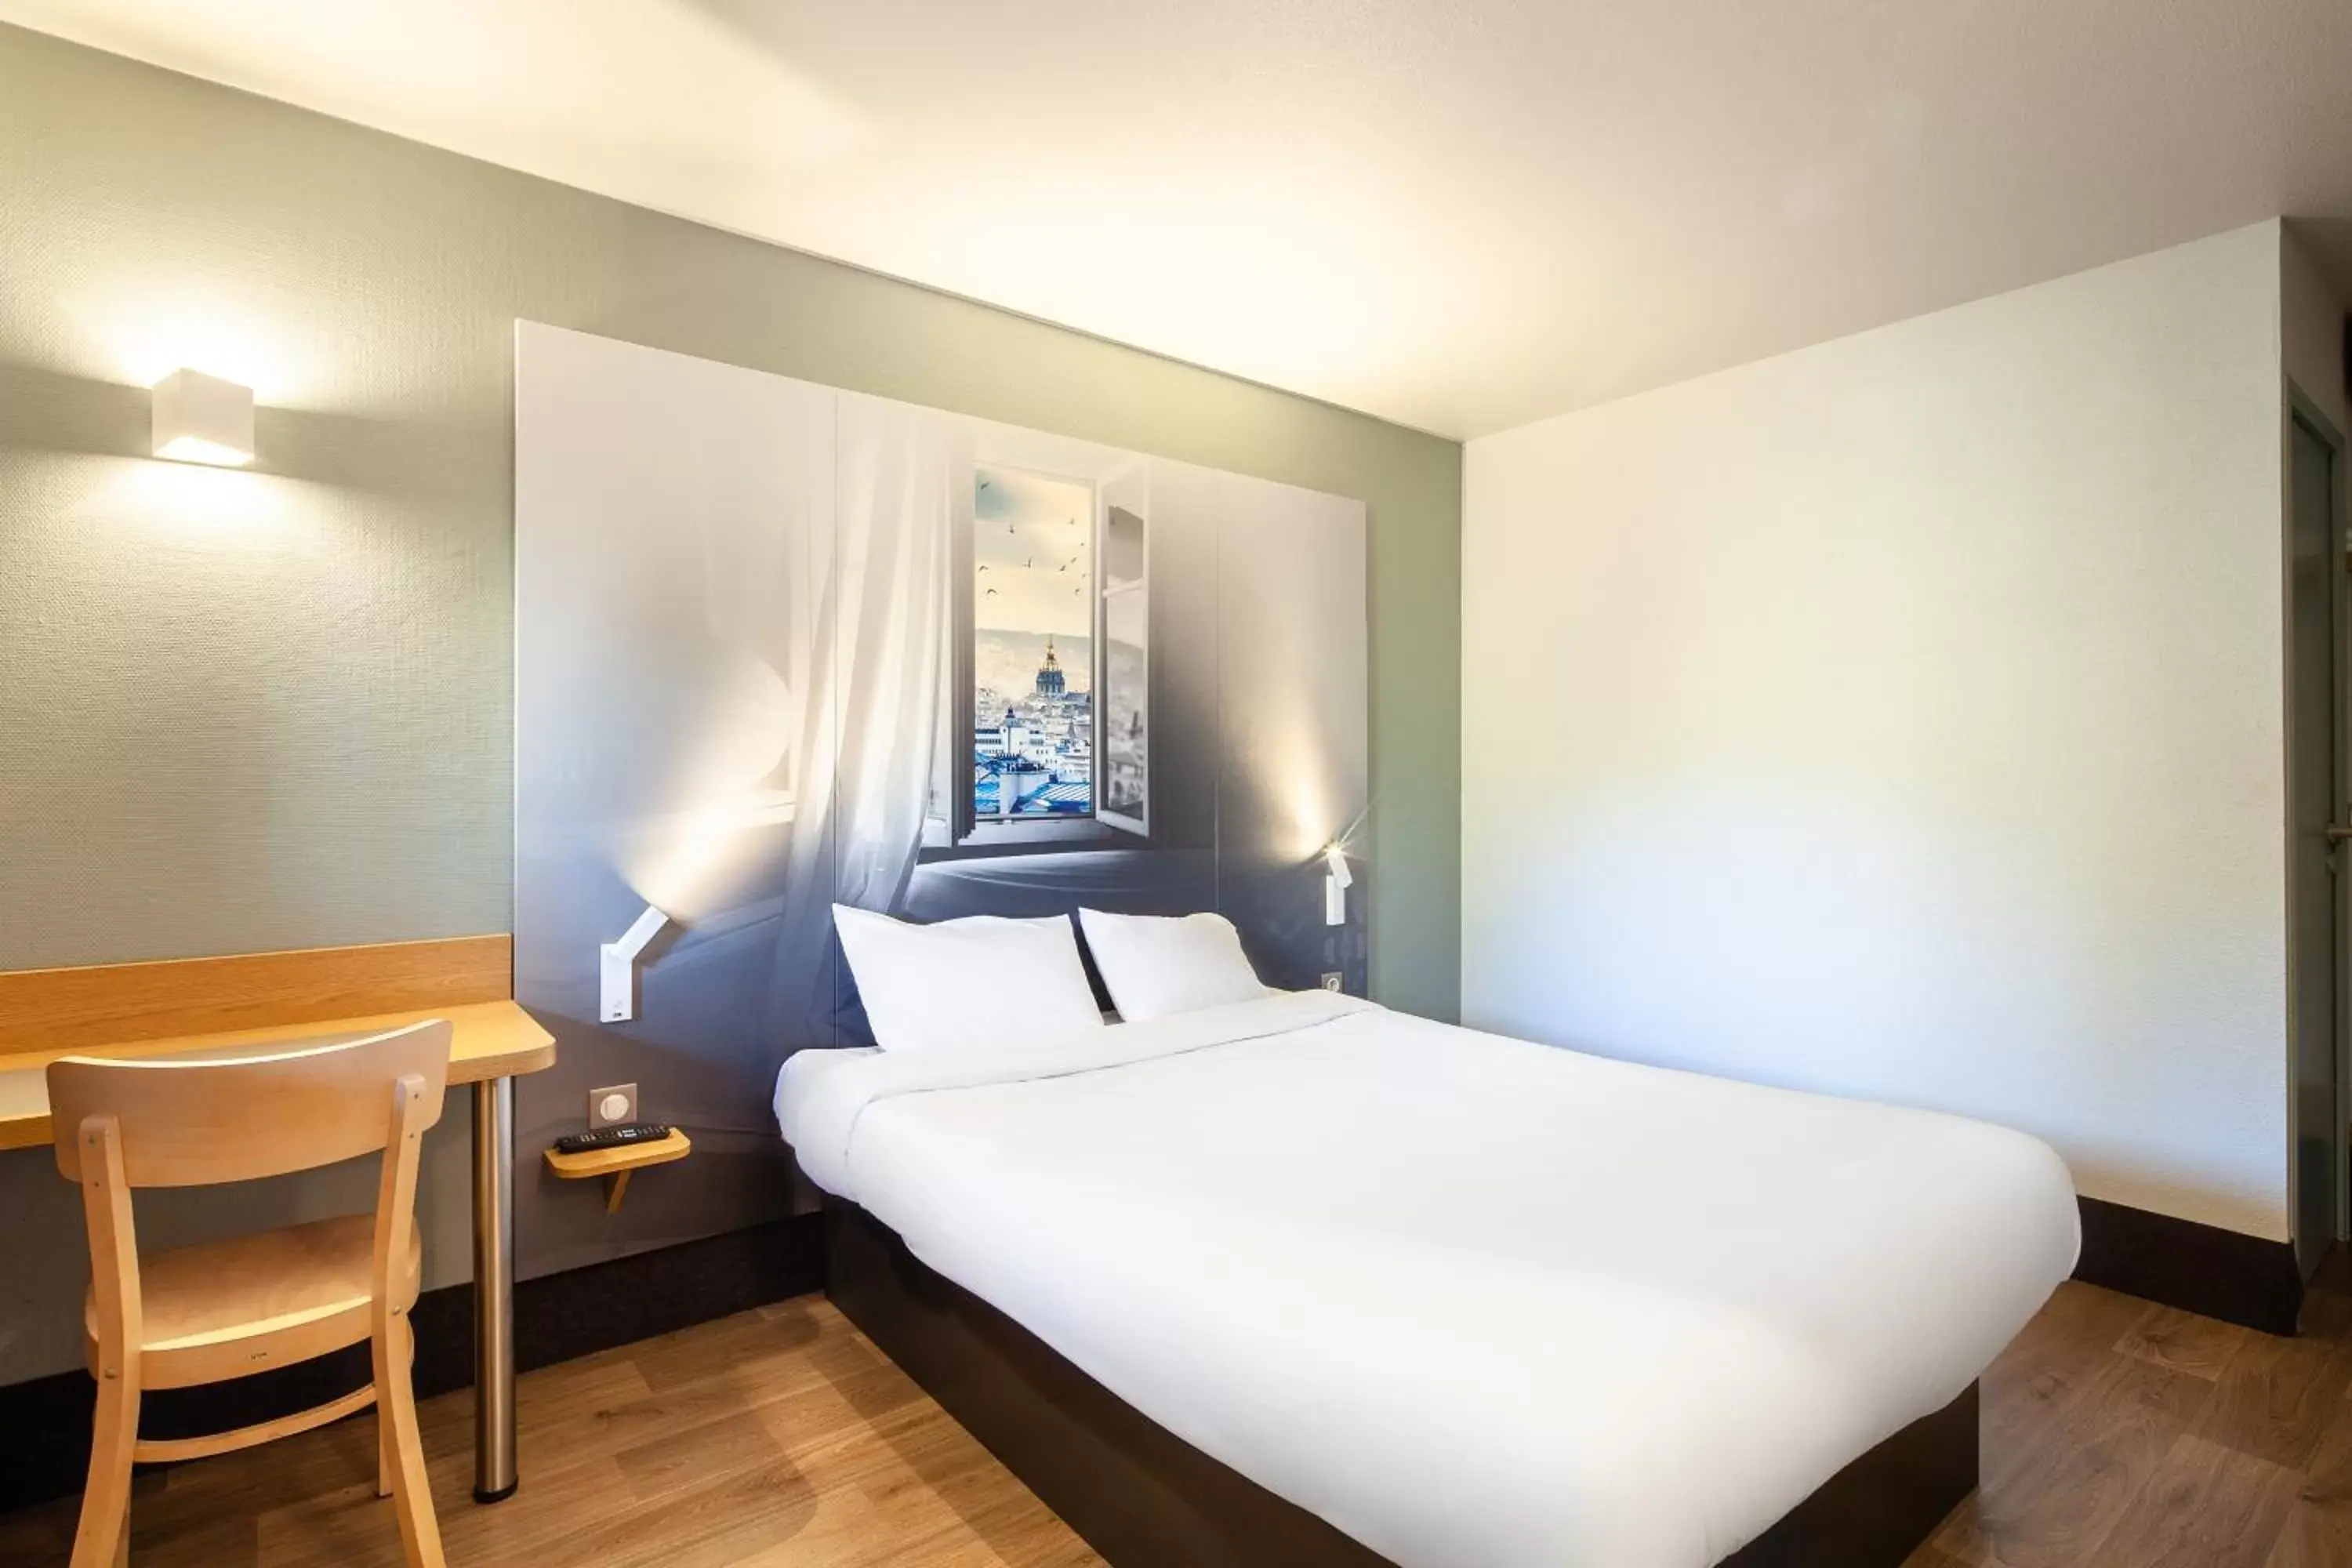 Bedroom, Bed in B&B HOTEL Pontault Combault